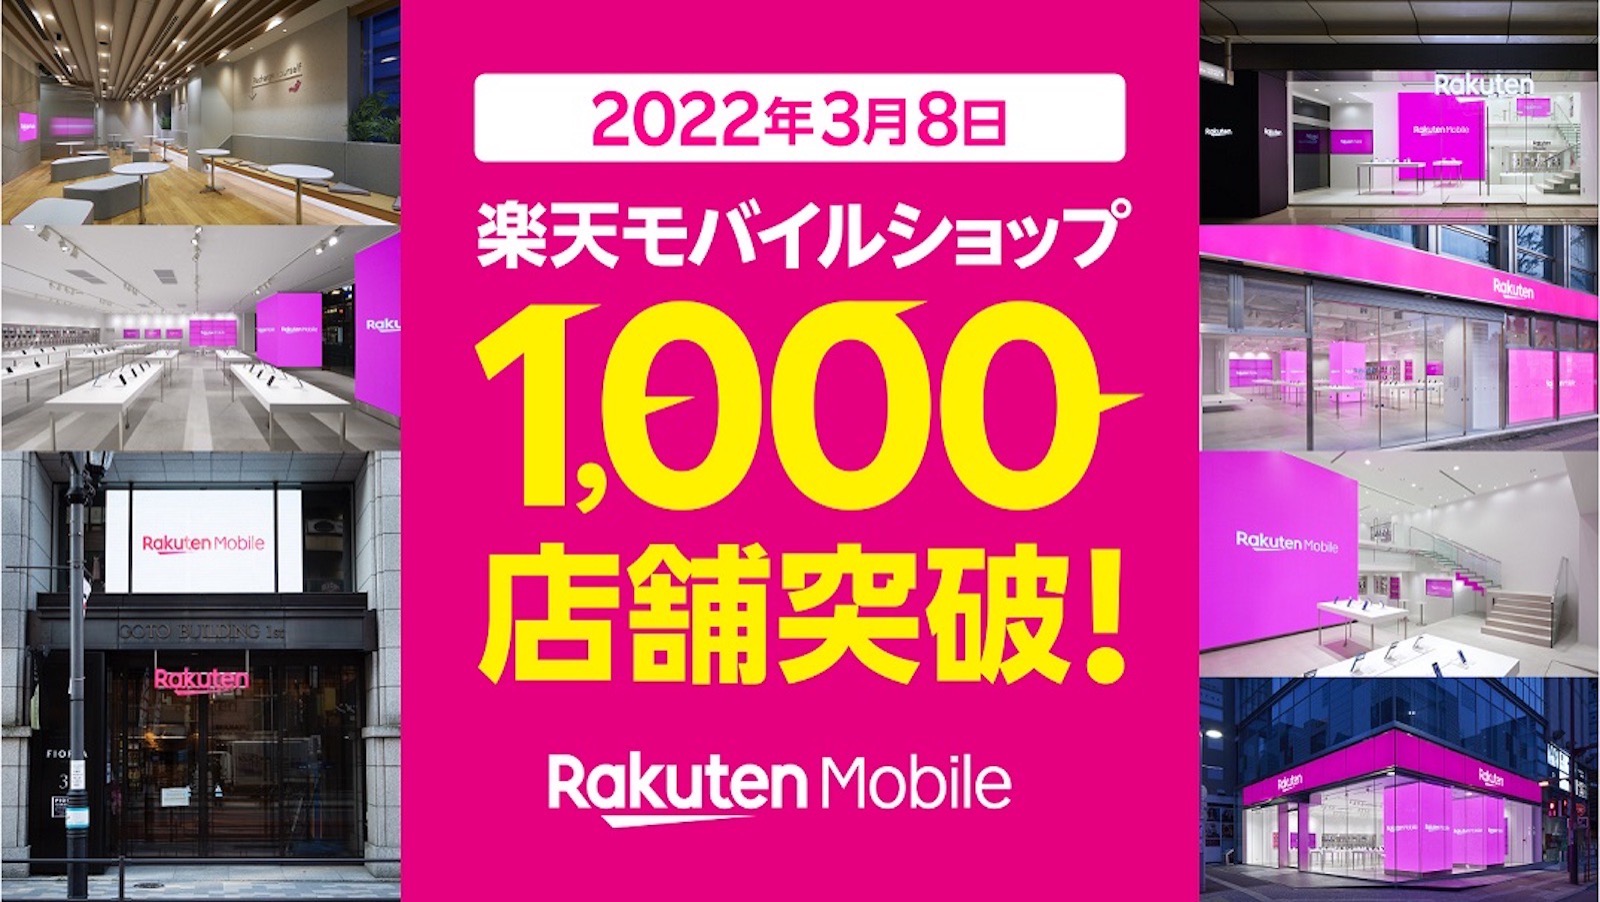 Rakuten mobile store campaign